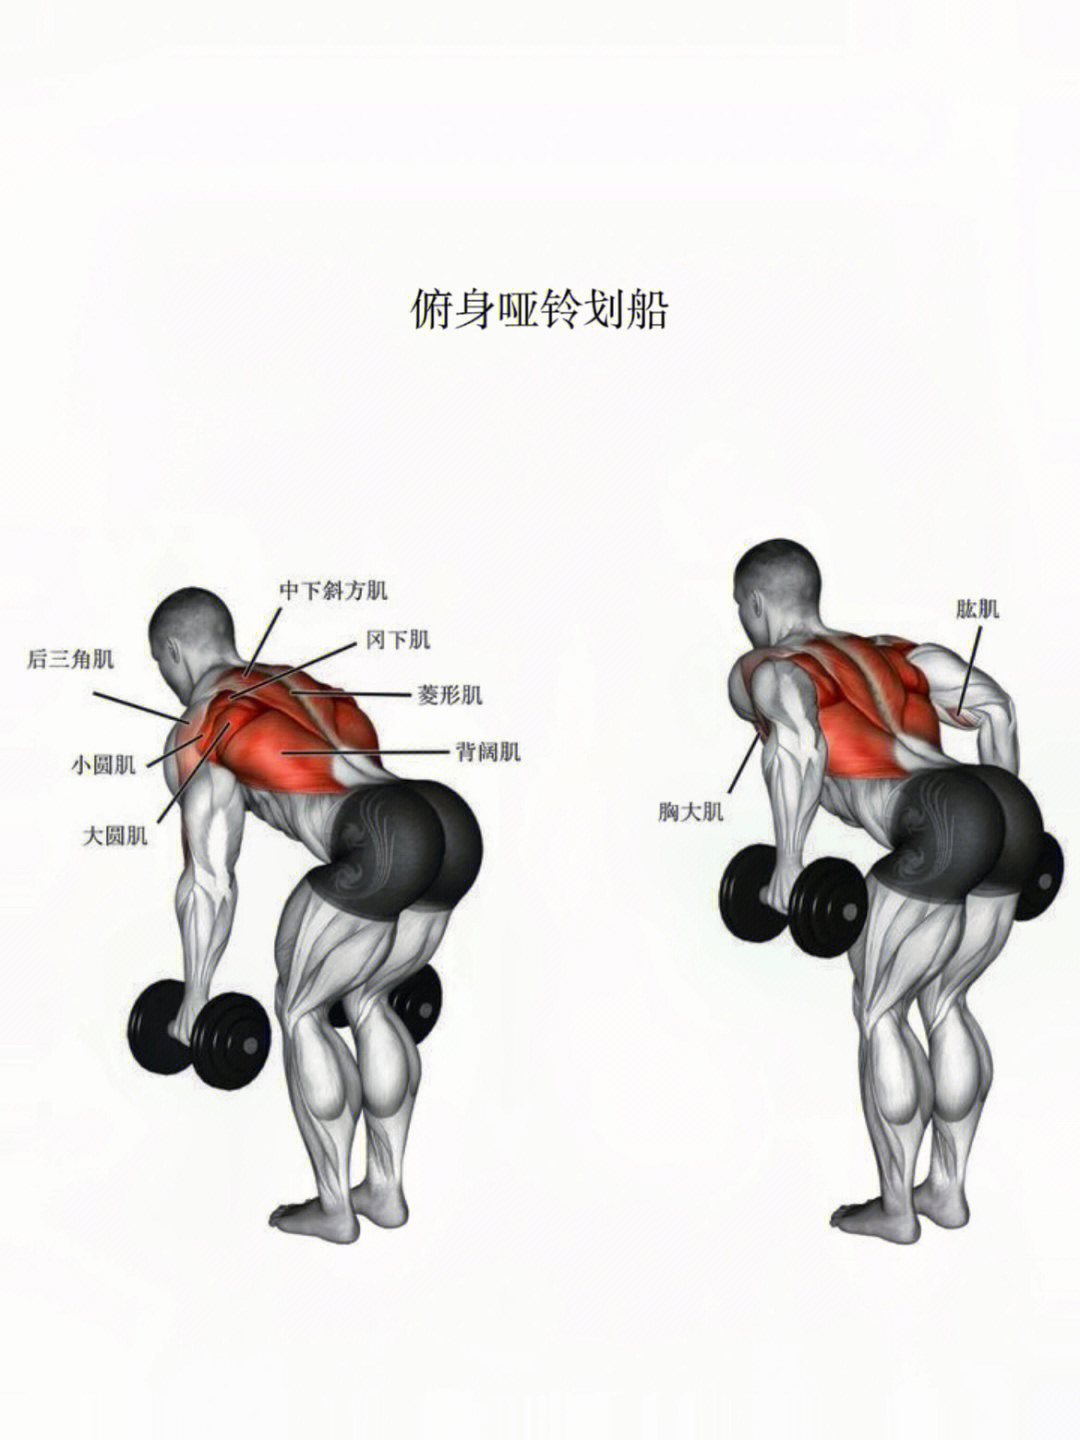 哑铃练臀部肌肉的动作图片